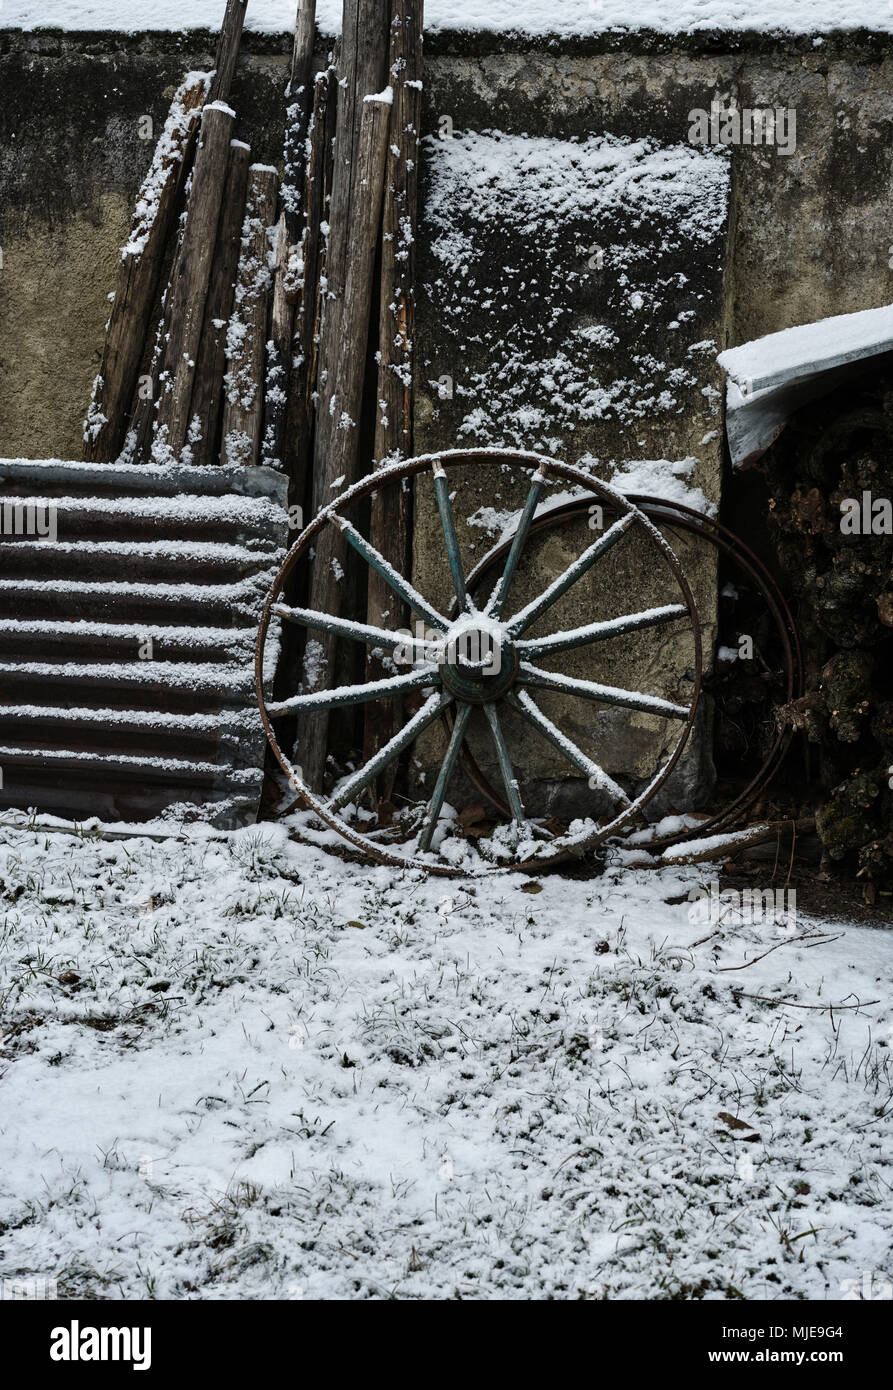 Ancienne ferme, la roue, de la tôle ondulée et de bois sur un mur, la neige Banque D'Images